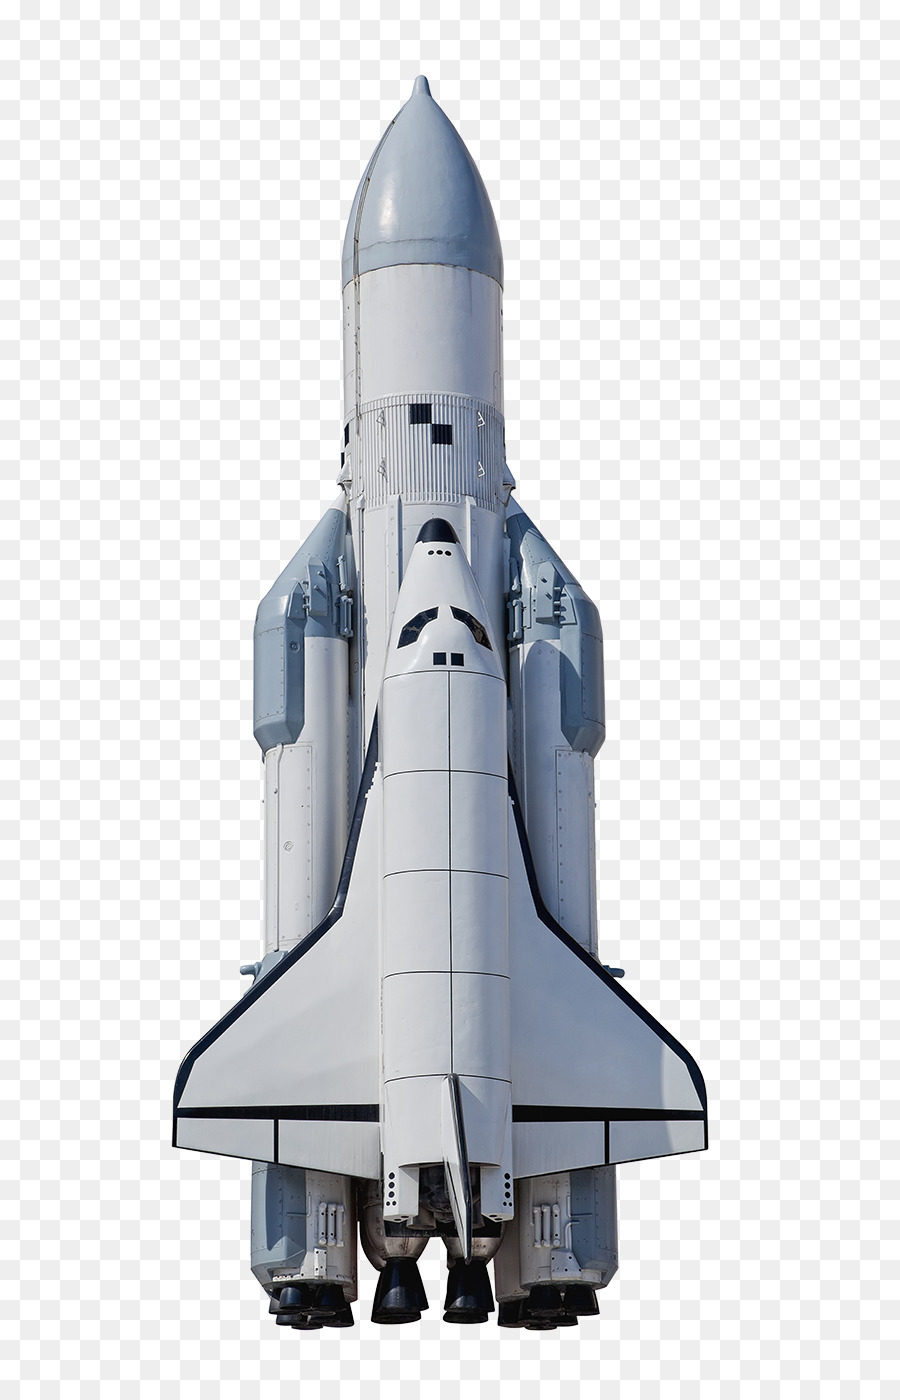 Il lancio del razzo Sonda spaziale Buran fotografia Stock - razzi